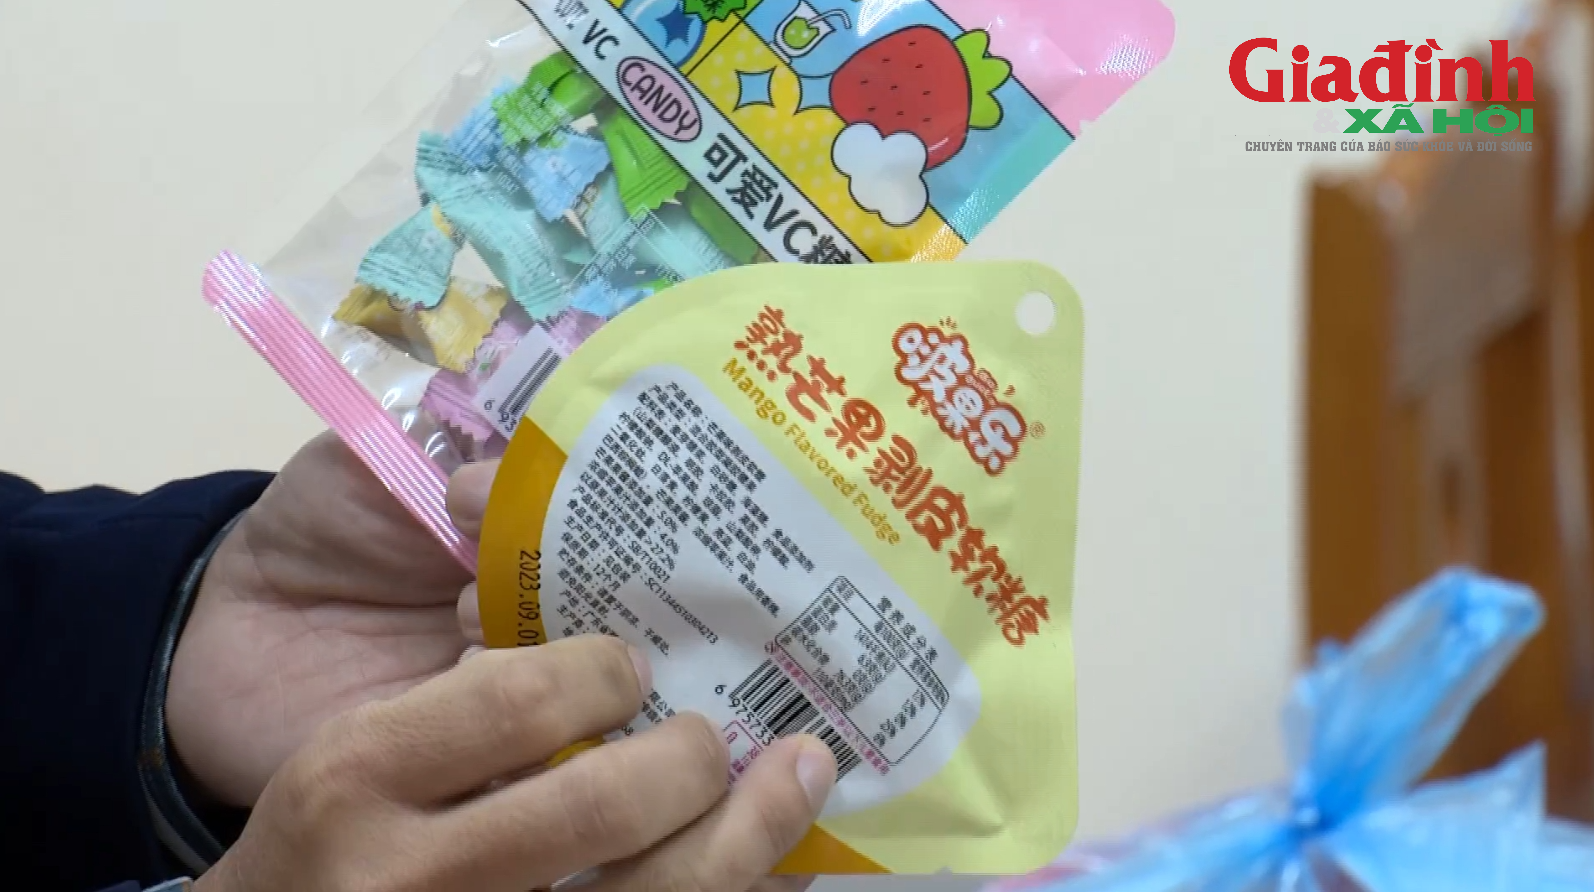 Nhận diện nhiều loại kẹo lạ các trường học đang 'truyền tay' cảnh báo sau vụ nhiều học sinh ở Hà Nội, Lạng Sơn bị mệt, đau bụng sau ăn - Ảnh 4.